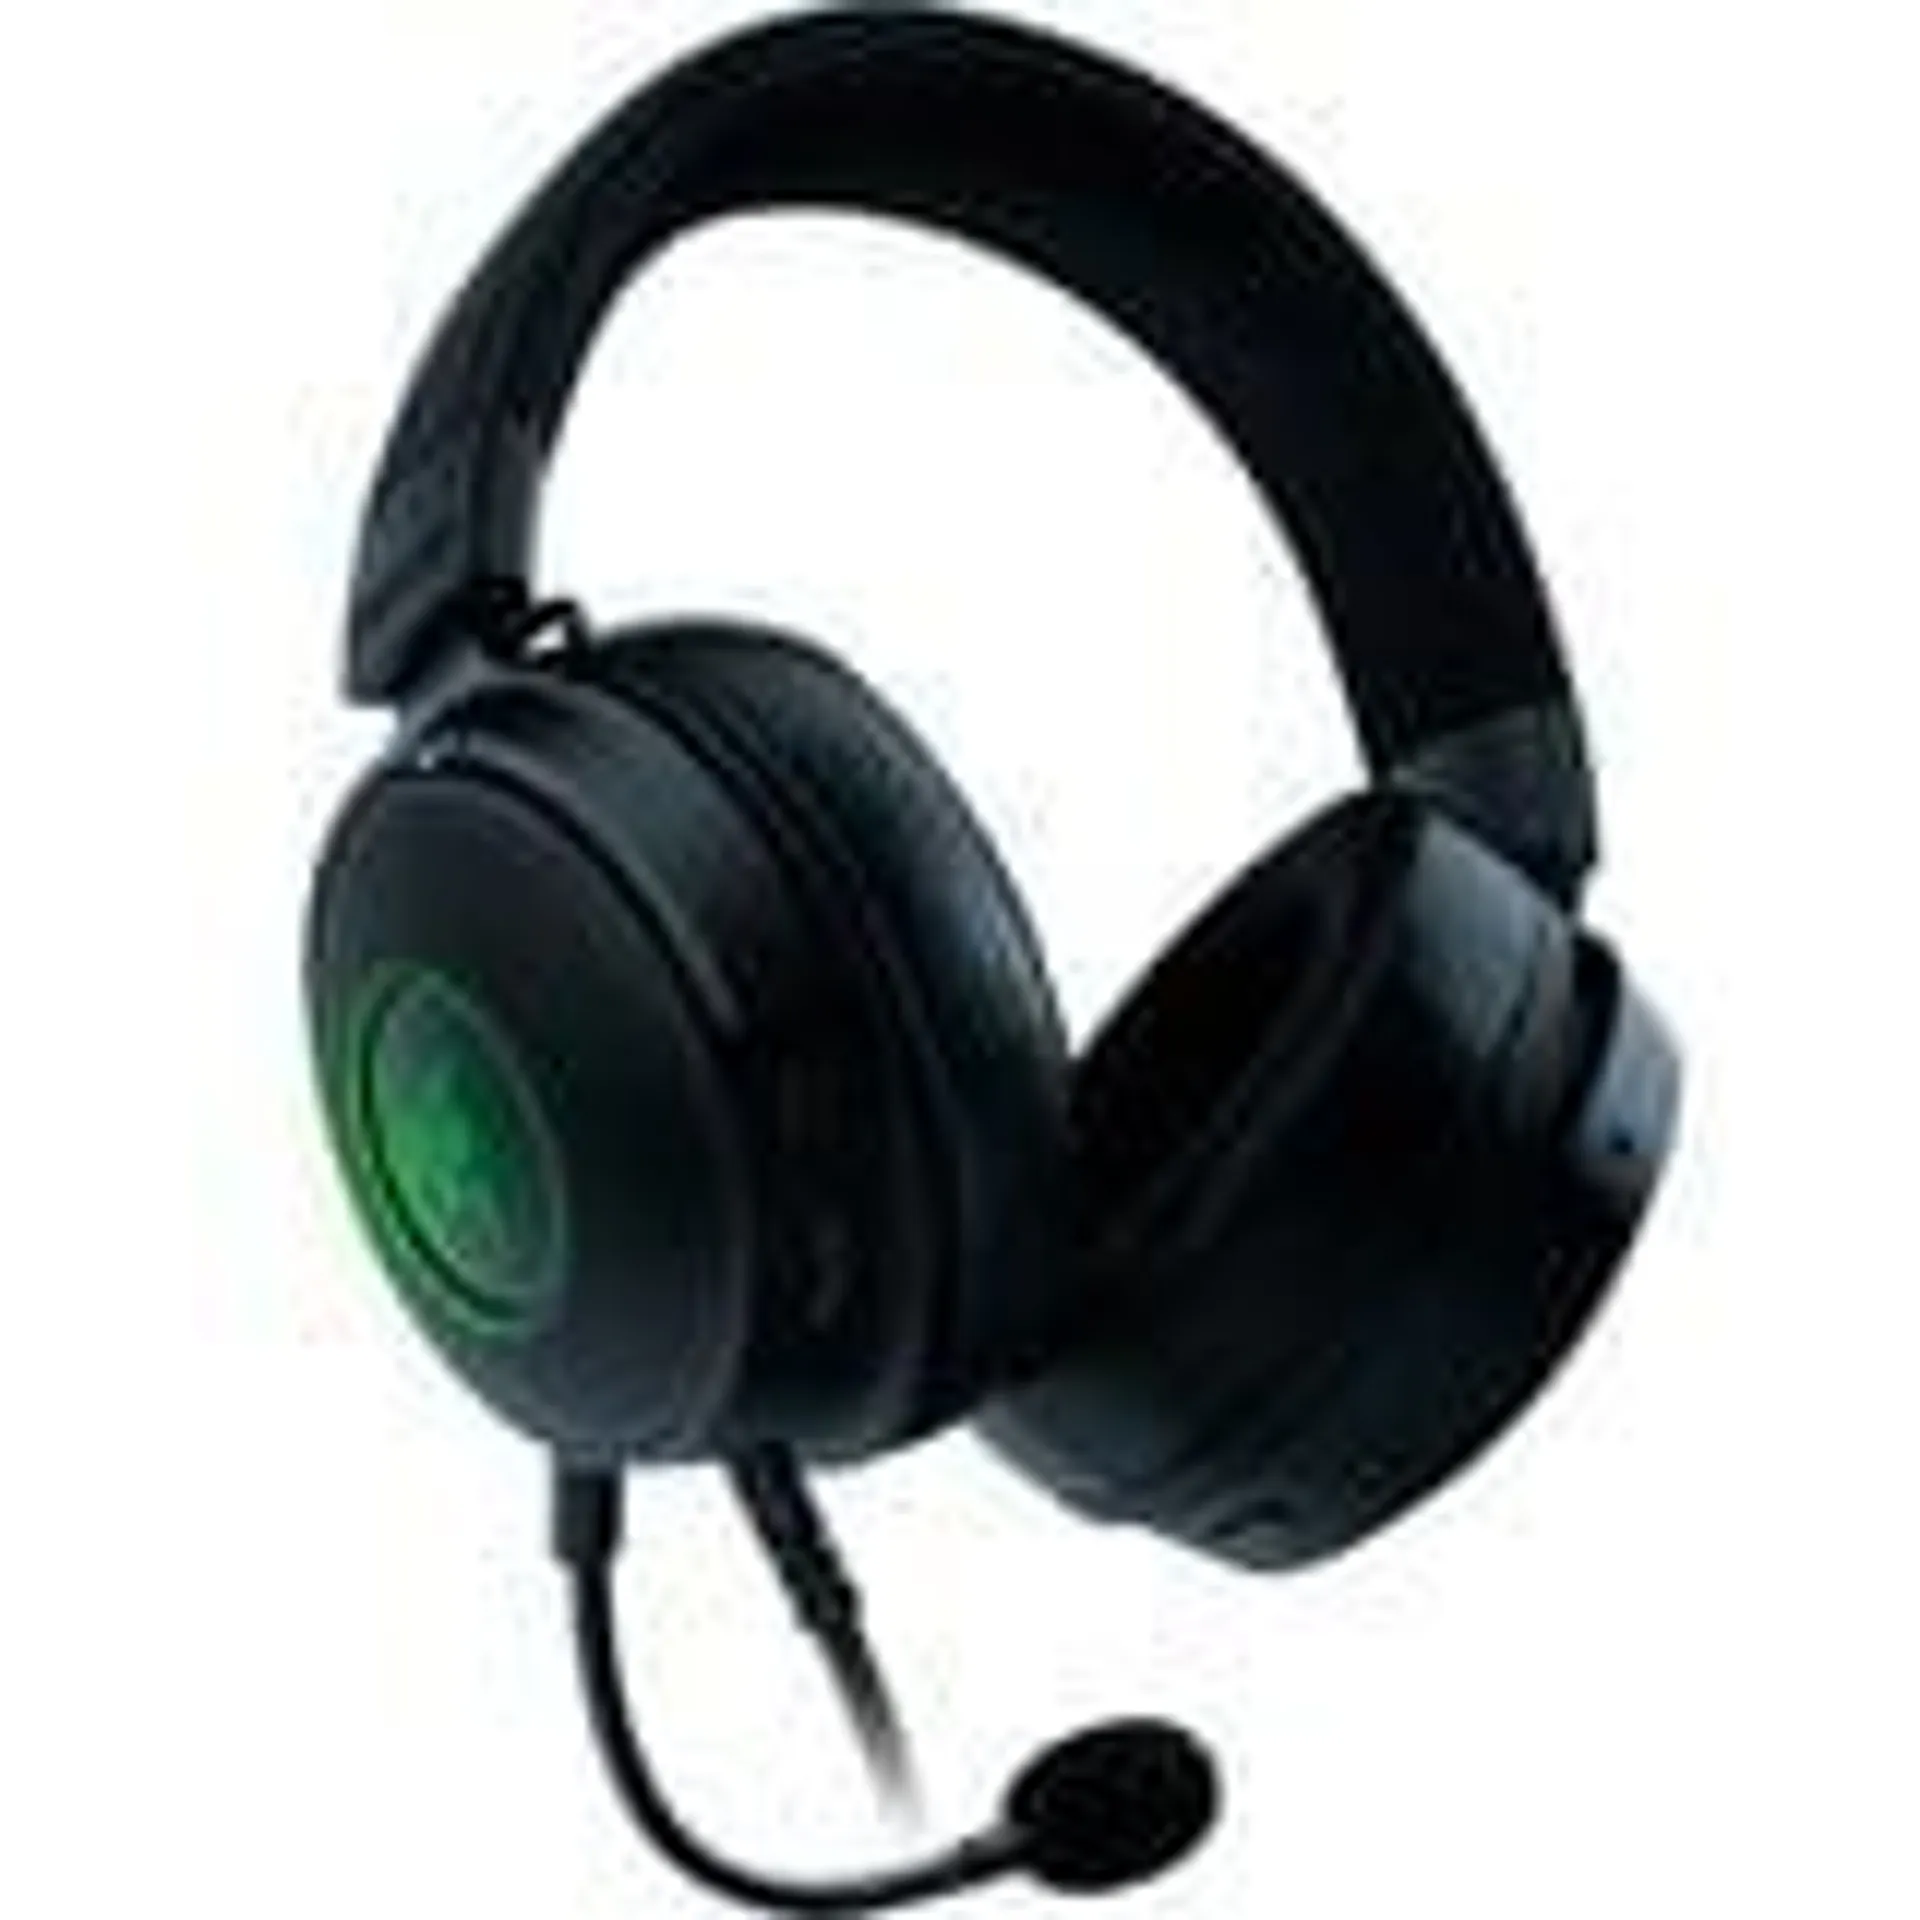 Kraken V3 Hypersense over-ear gaming headset